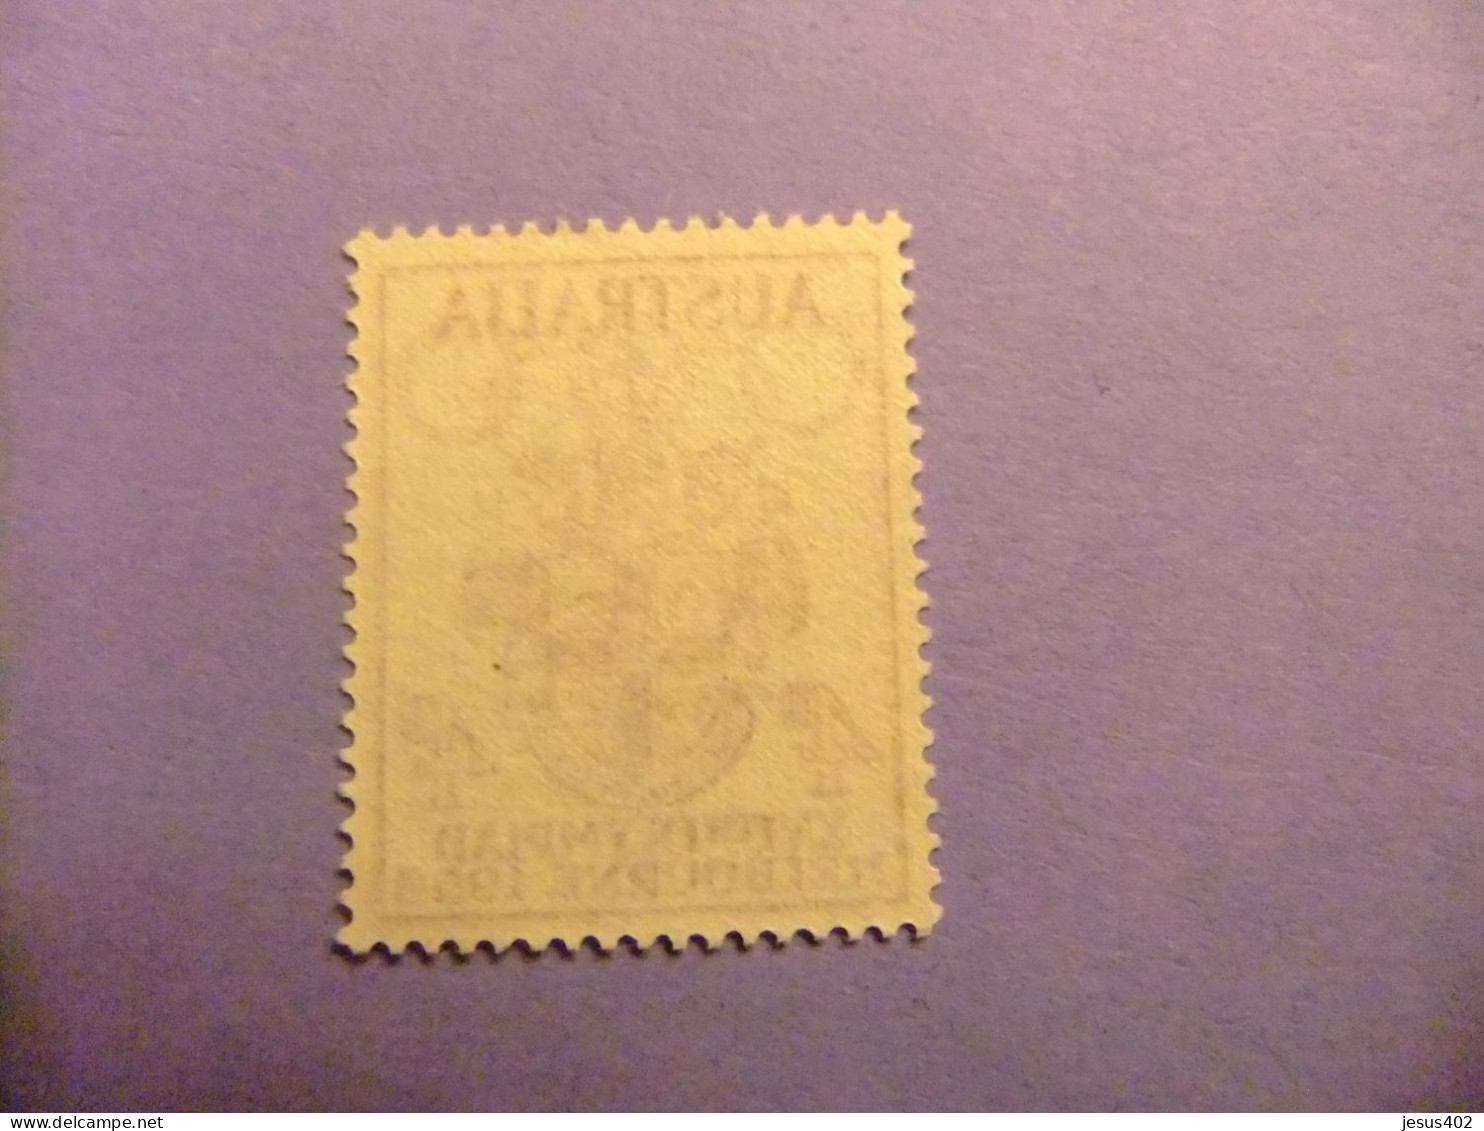 AUSTRALIE / AUSTRALIA 1956 ESCUDO JUEGOS OLIMPICOS MELBURNE YVERT 231 MNH - Mint Stamps